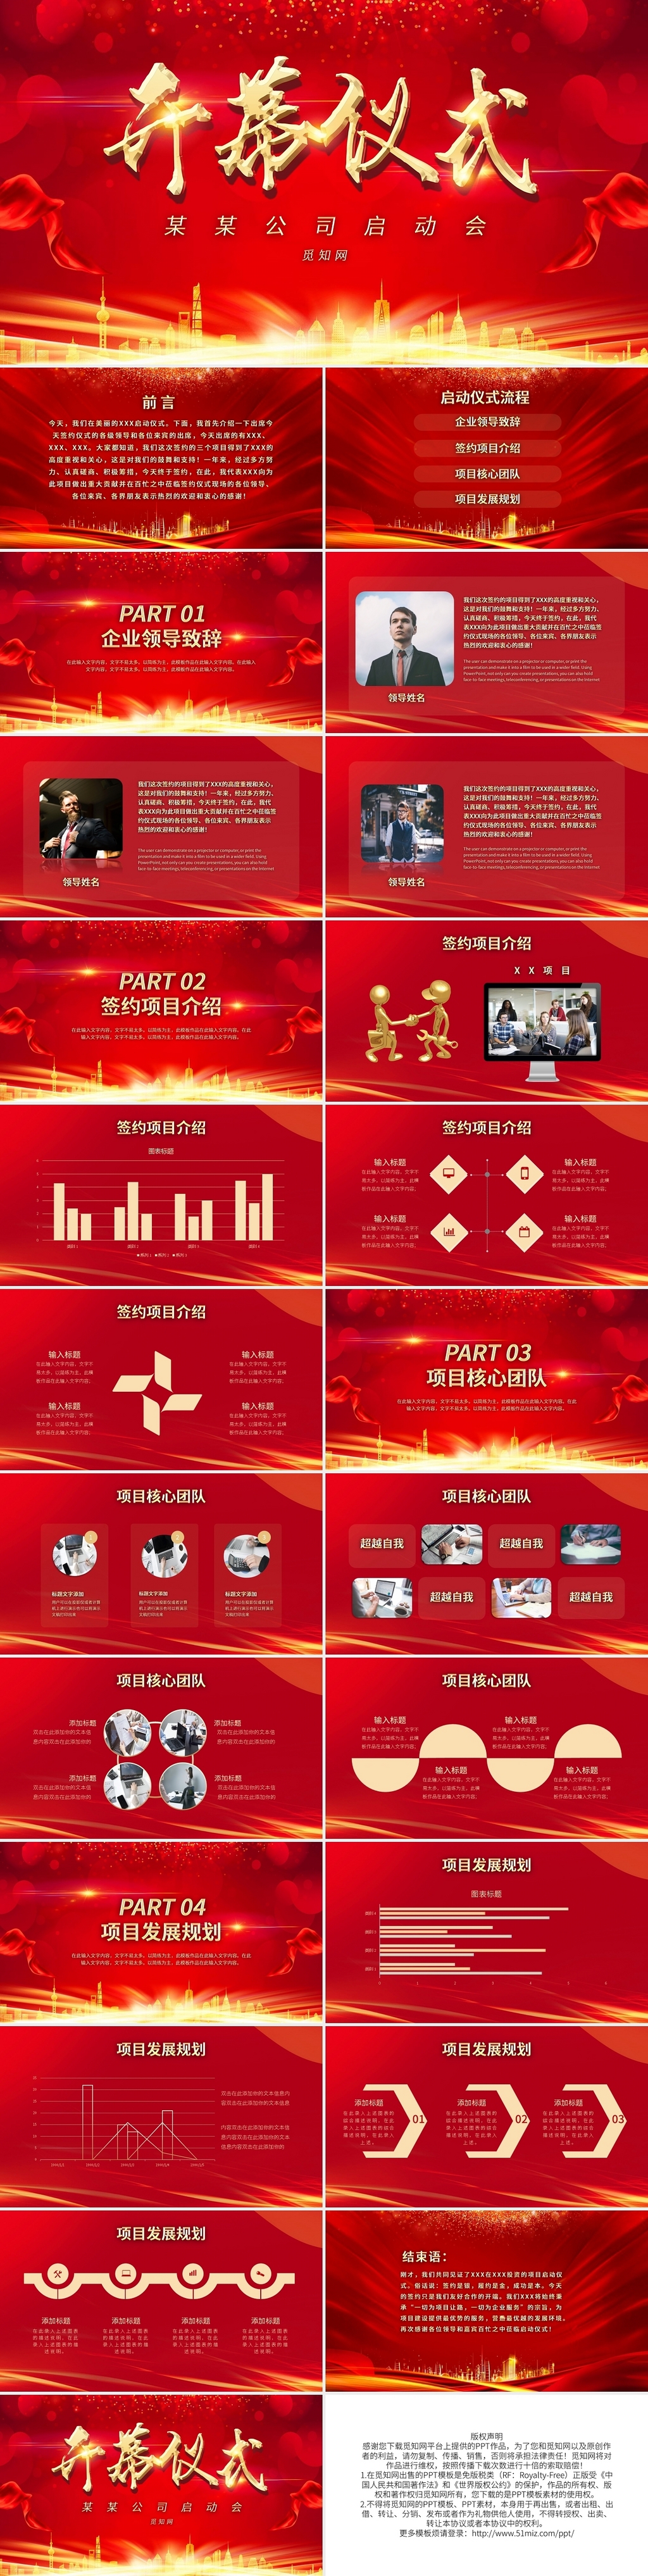 红色大气开幕仪式PPT模板宣传PPT动态PPT2021启动会